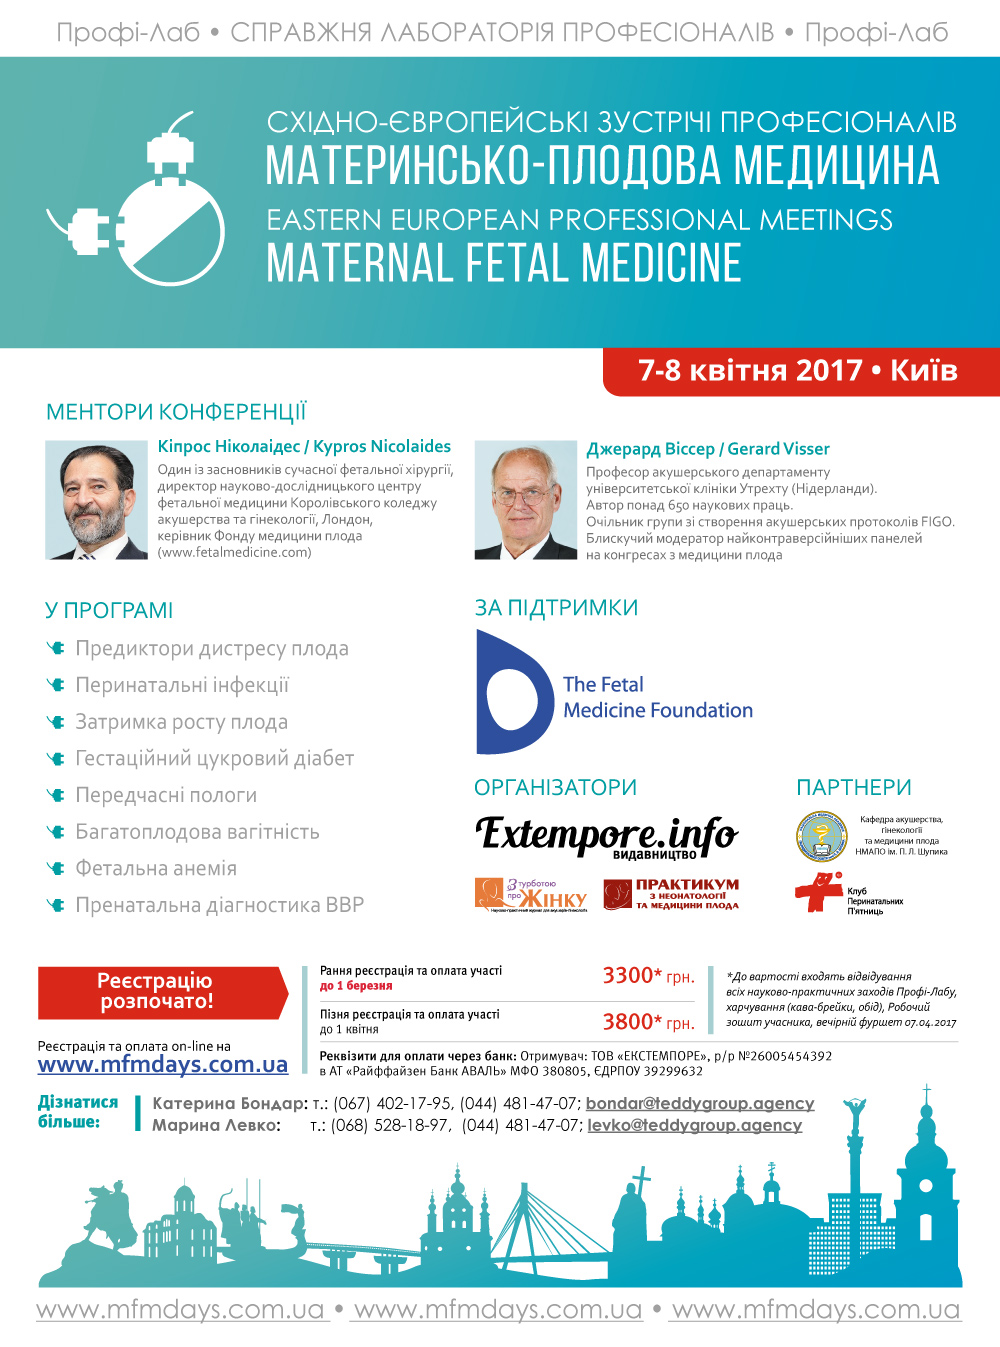 Научно-практическая конференция «Восточноевропейские встречи профессионалов: материнско-плодовая медицина»